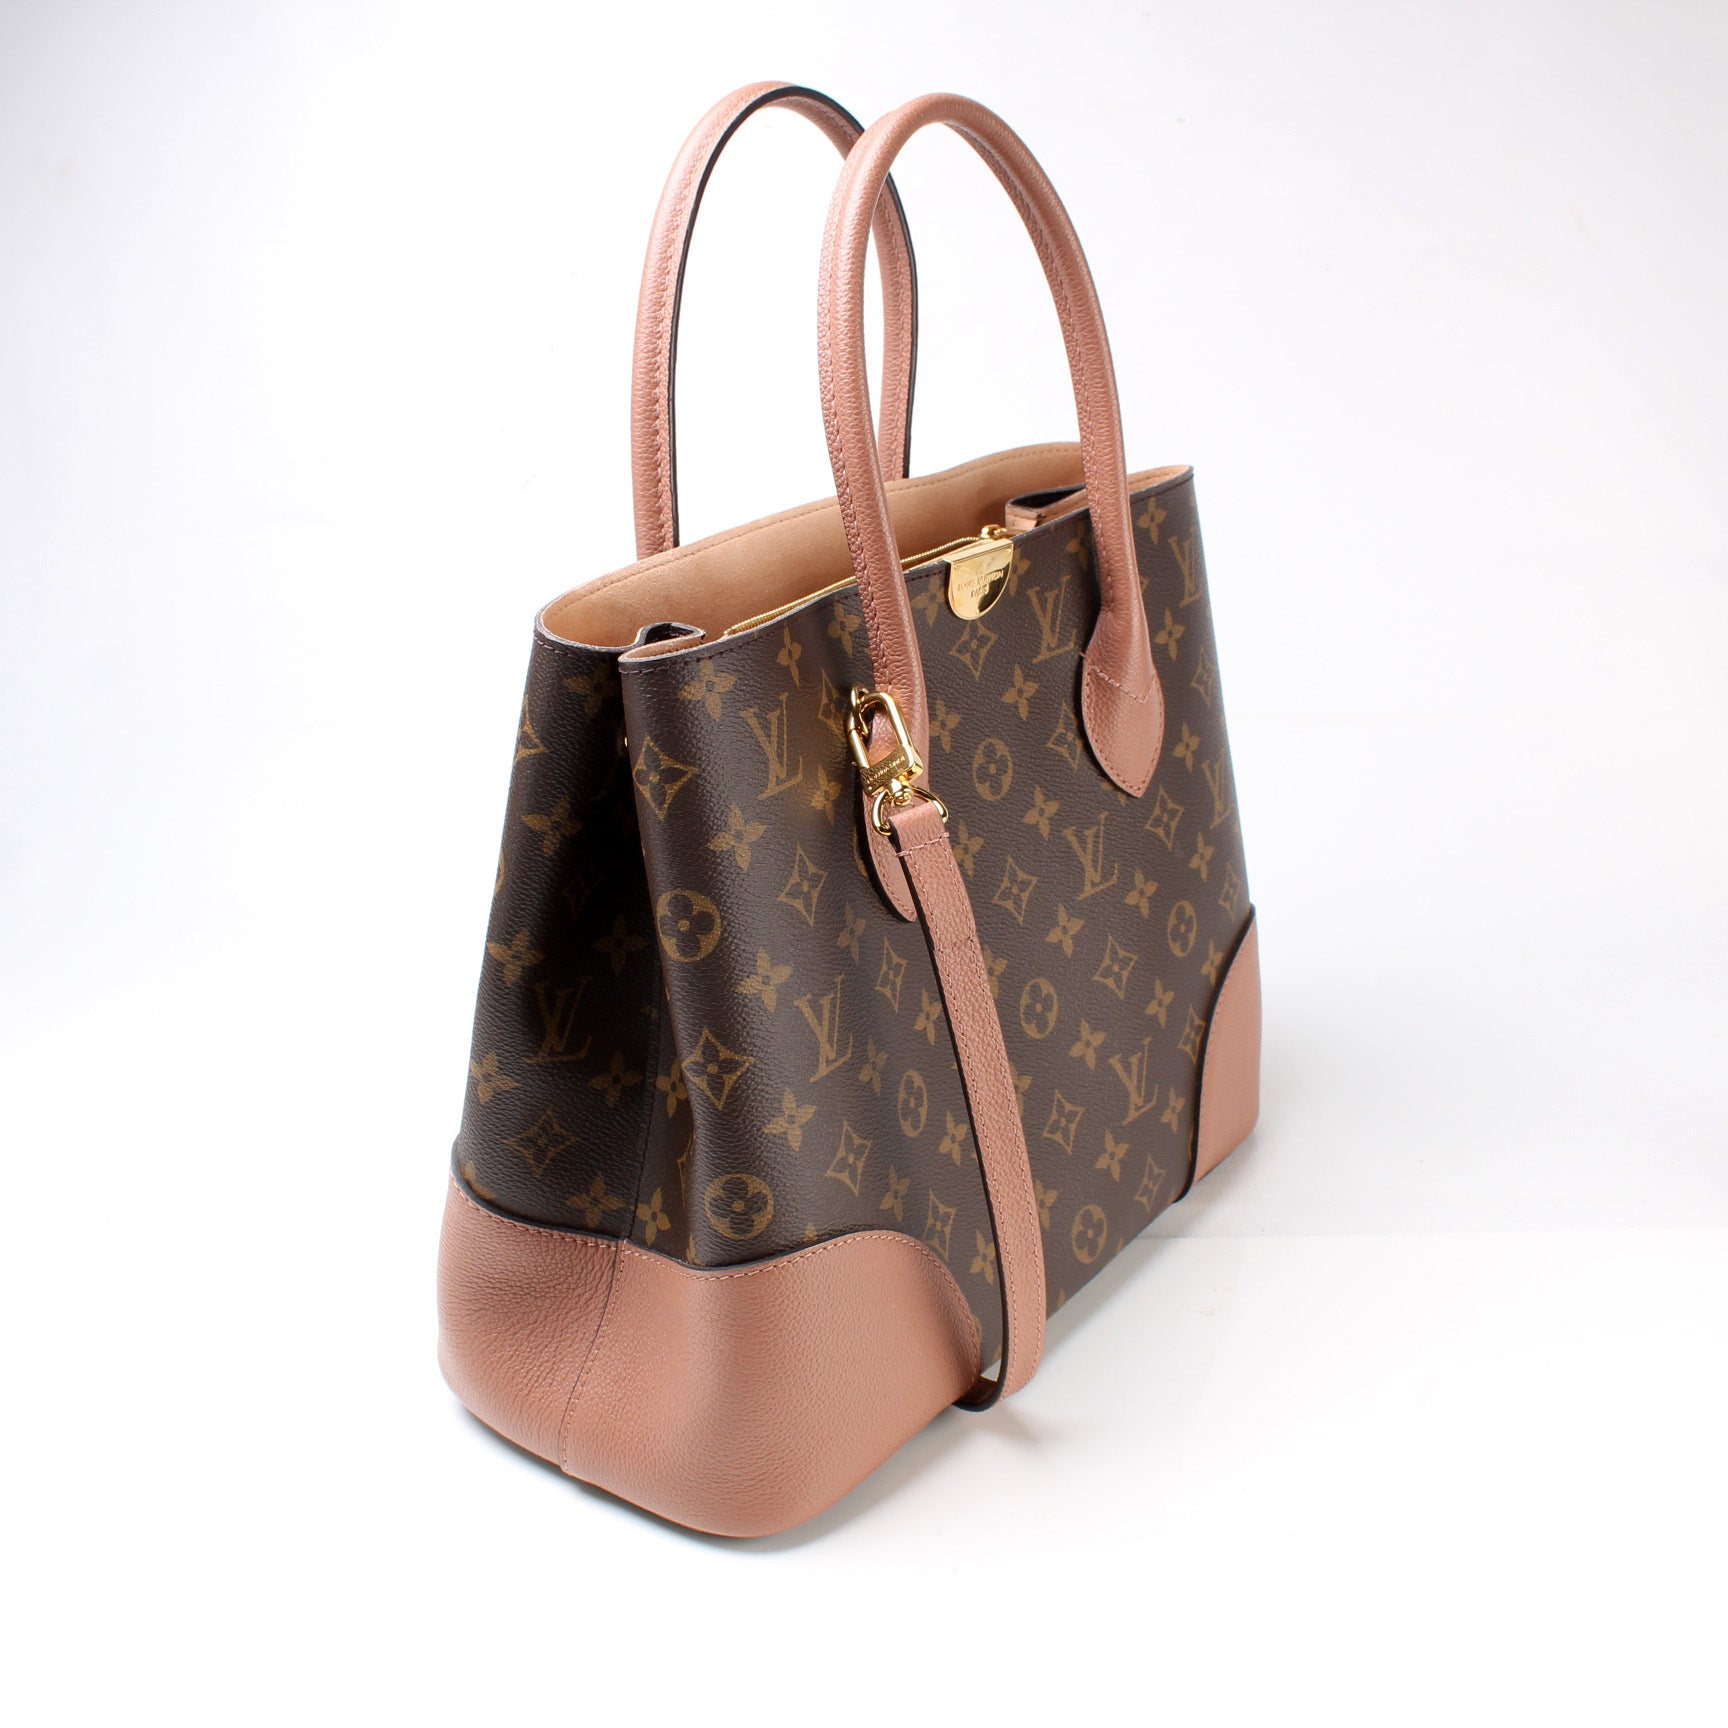 Louis Vuitton Flandrin Bag Price